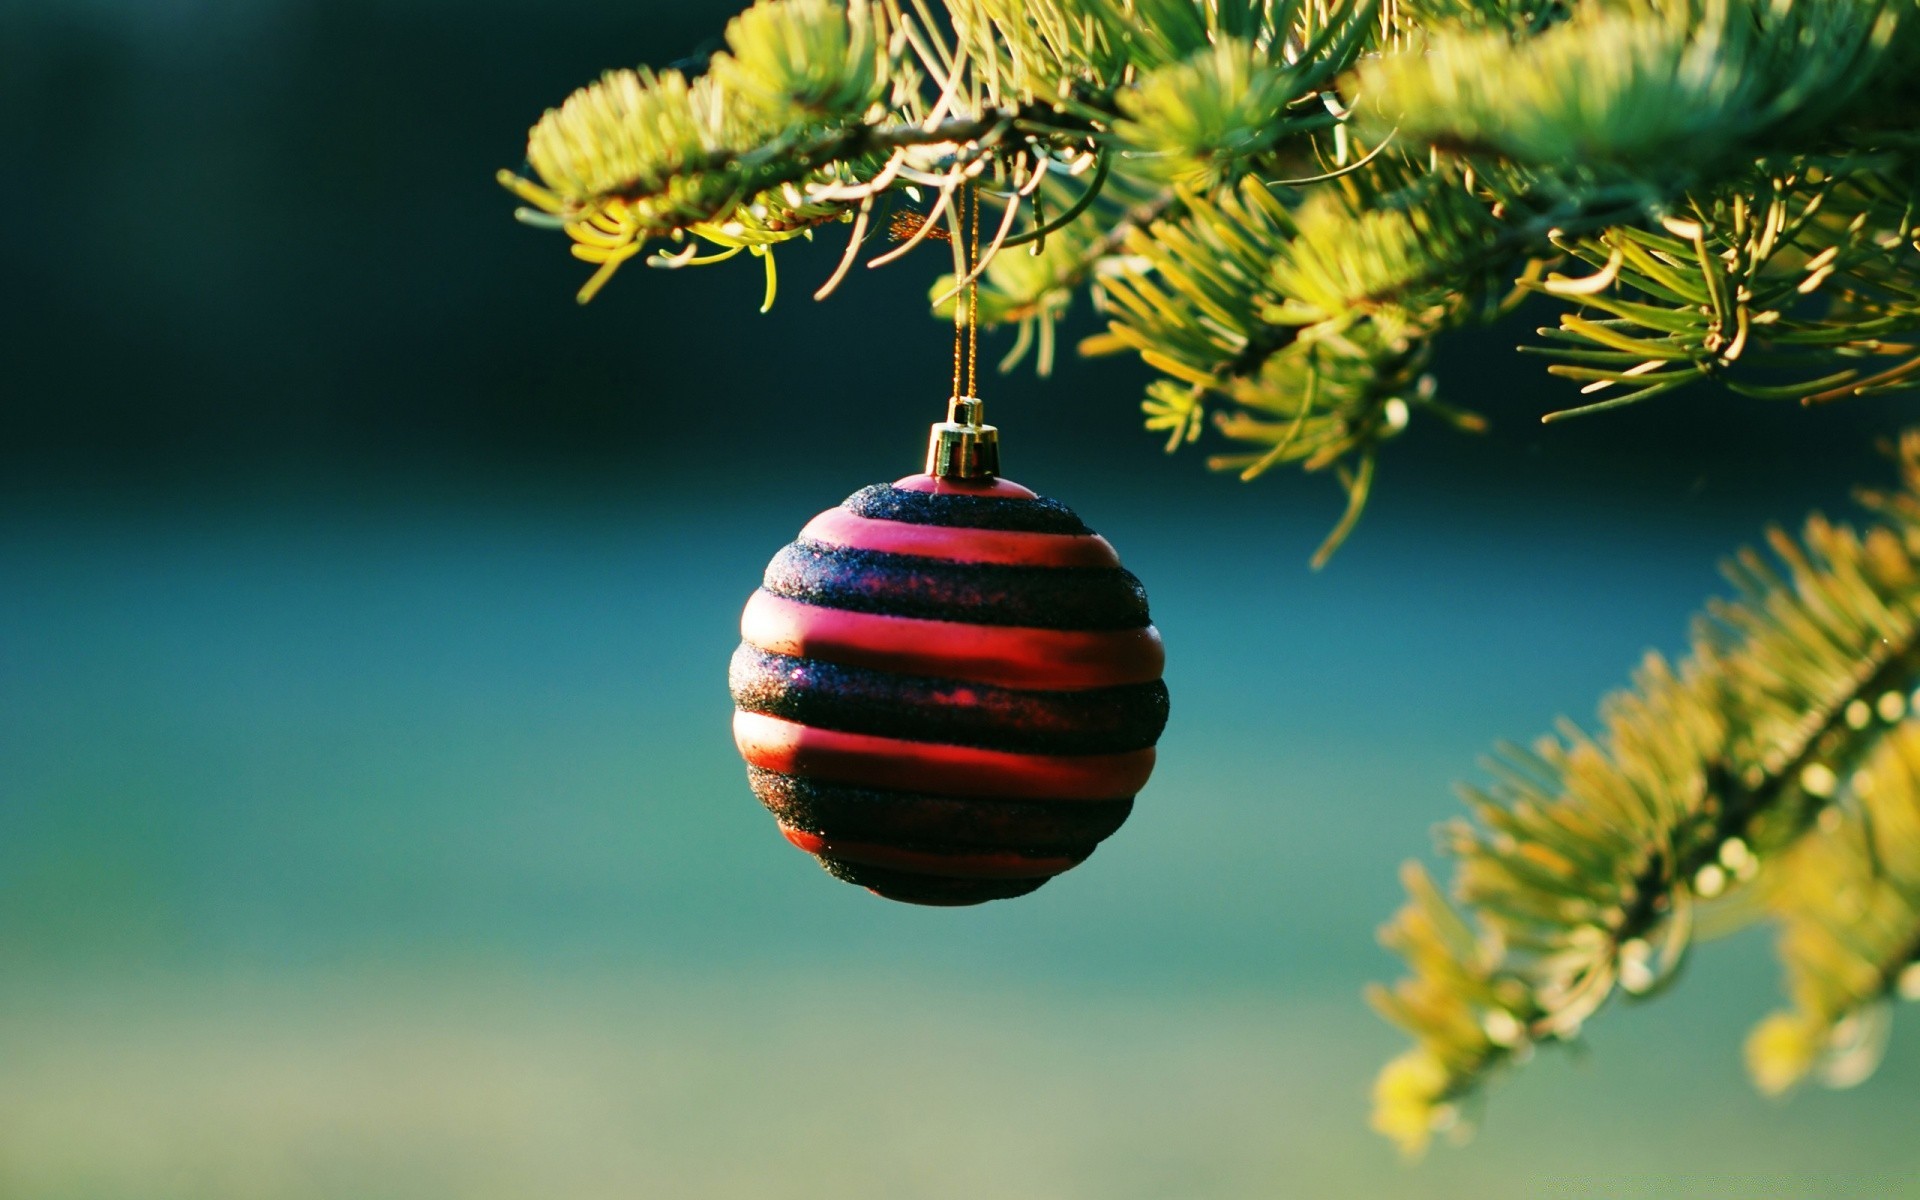 новый год дерево висит рождество зима филиал украшения мяч золото природа эвергрин яркий светит сосна сезон праздник